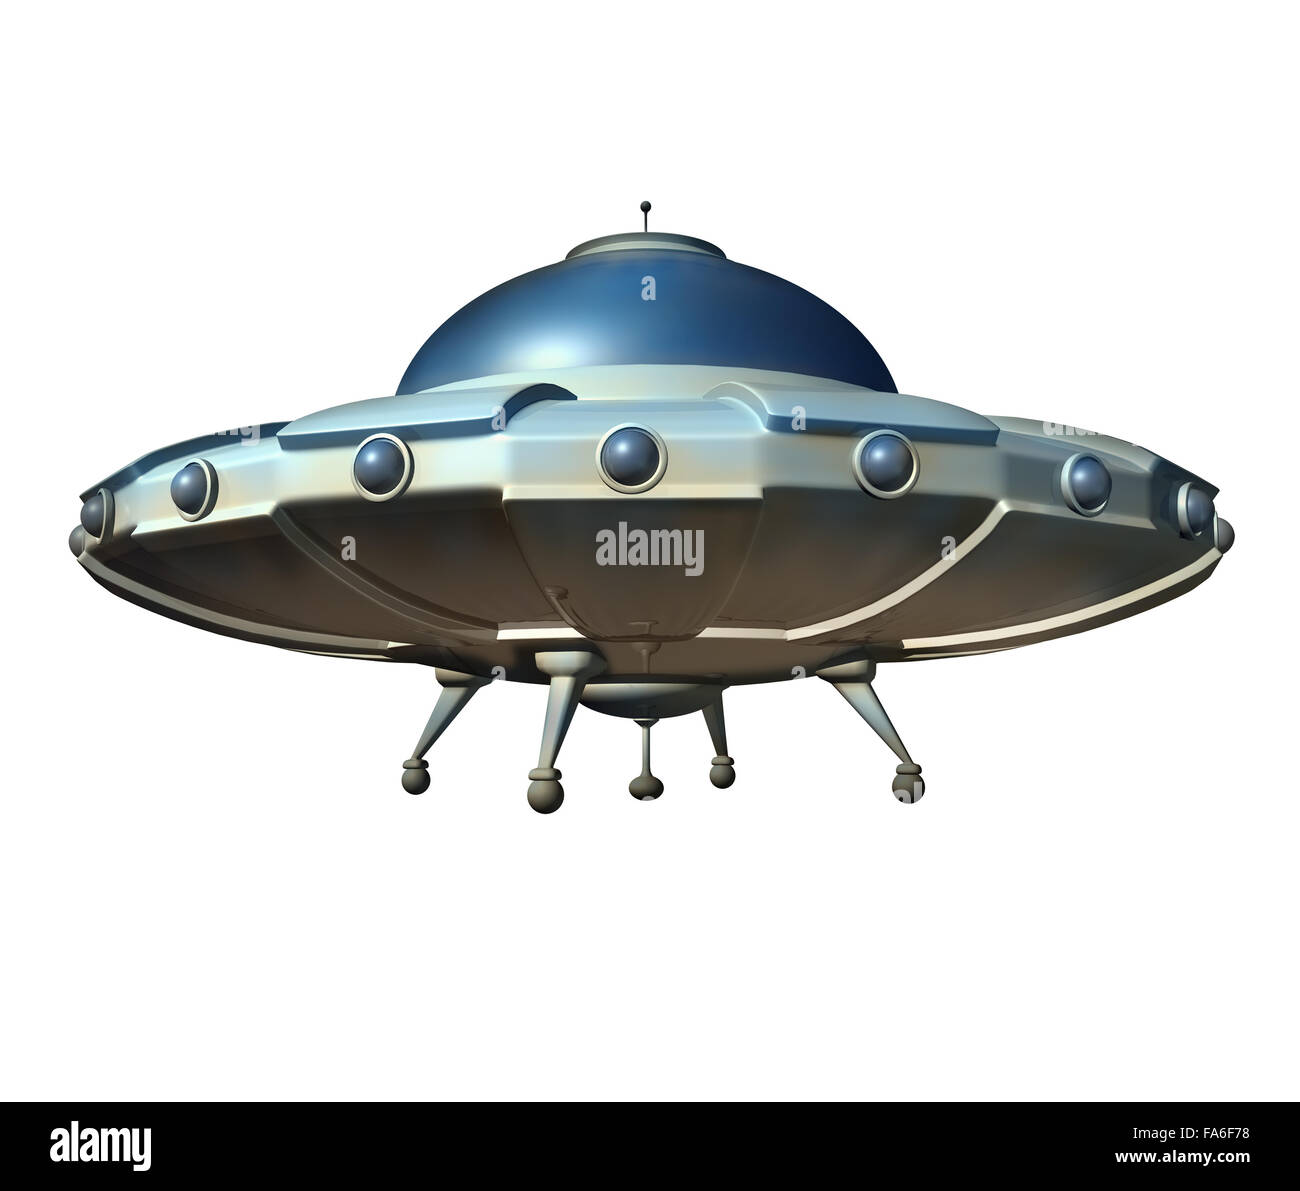 Fliegende Untertasse Raumschiff isoliert auf einem weißen Hintergrund als klassische ufo Außerirdischen Hover Craft aus dem Weltraum als ein Science-Fiction-Symbol zum sondieren außerirdisches Raumschiff Verschwörungstheorie. Stockfoto